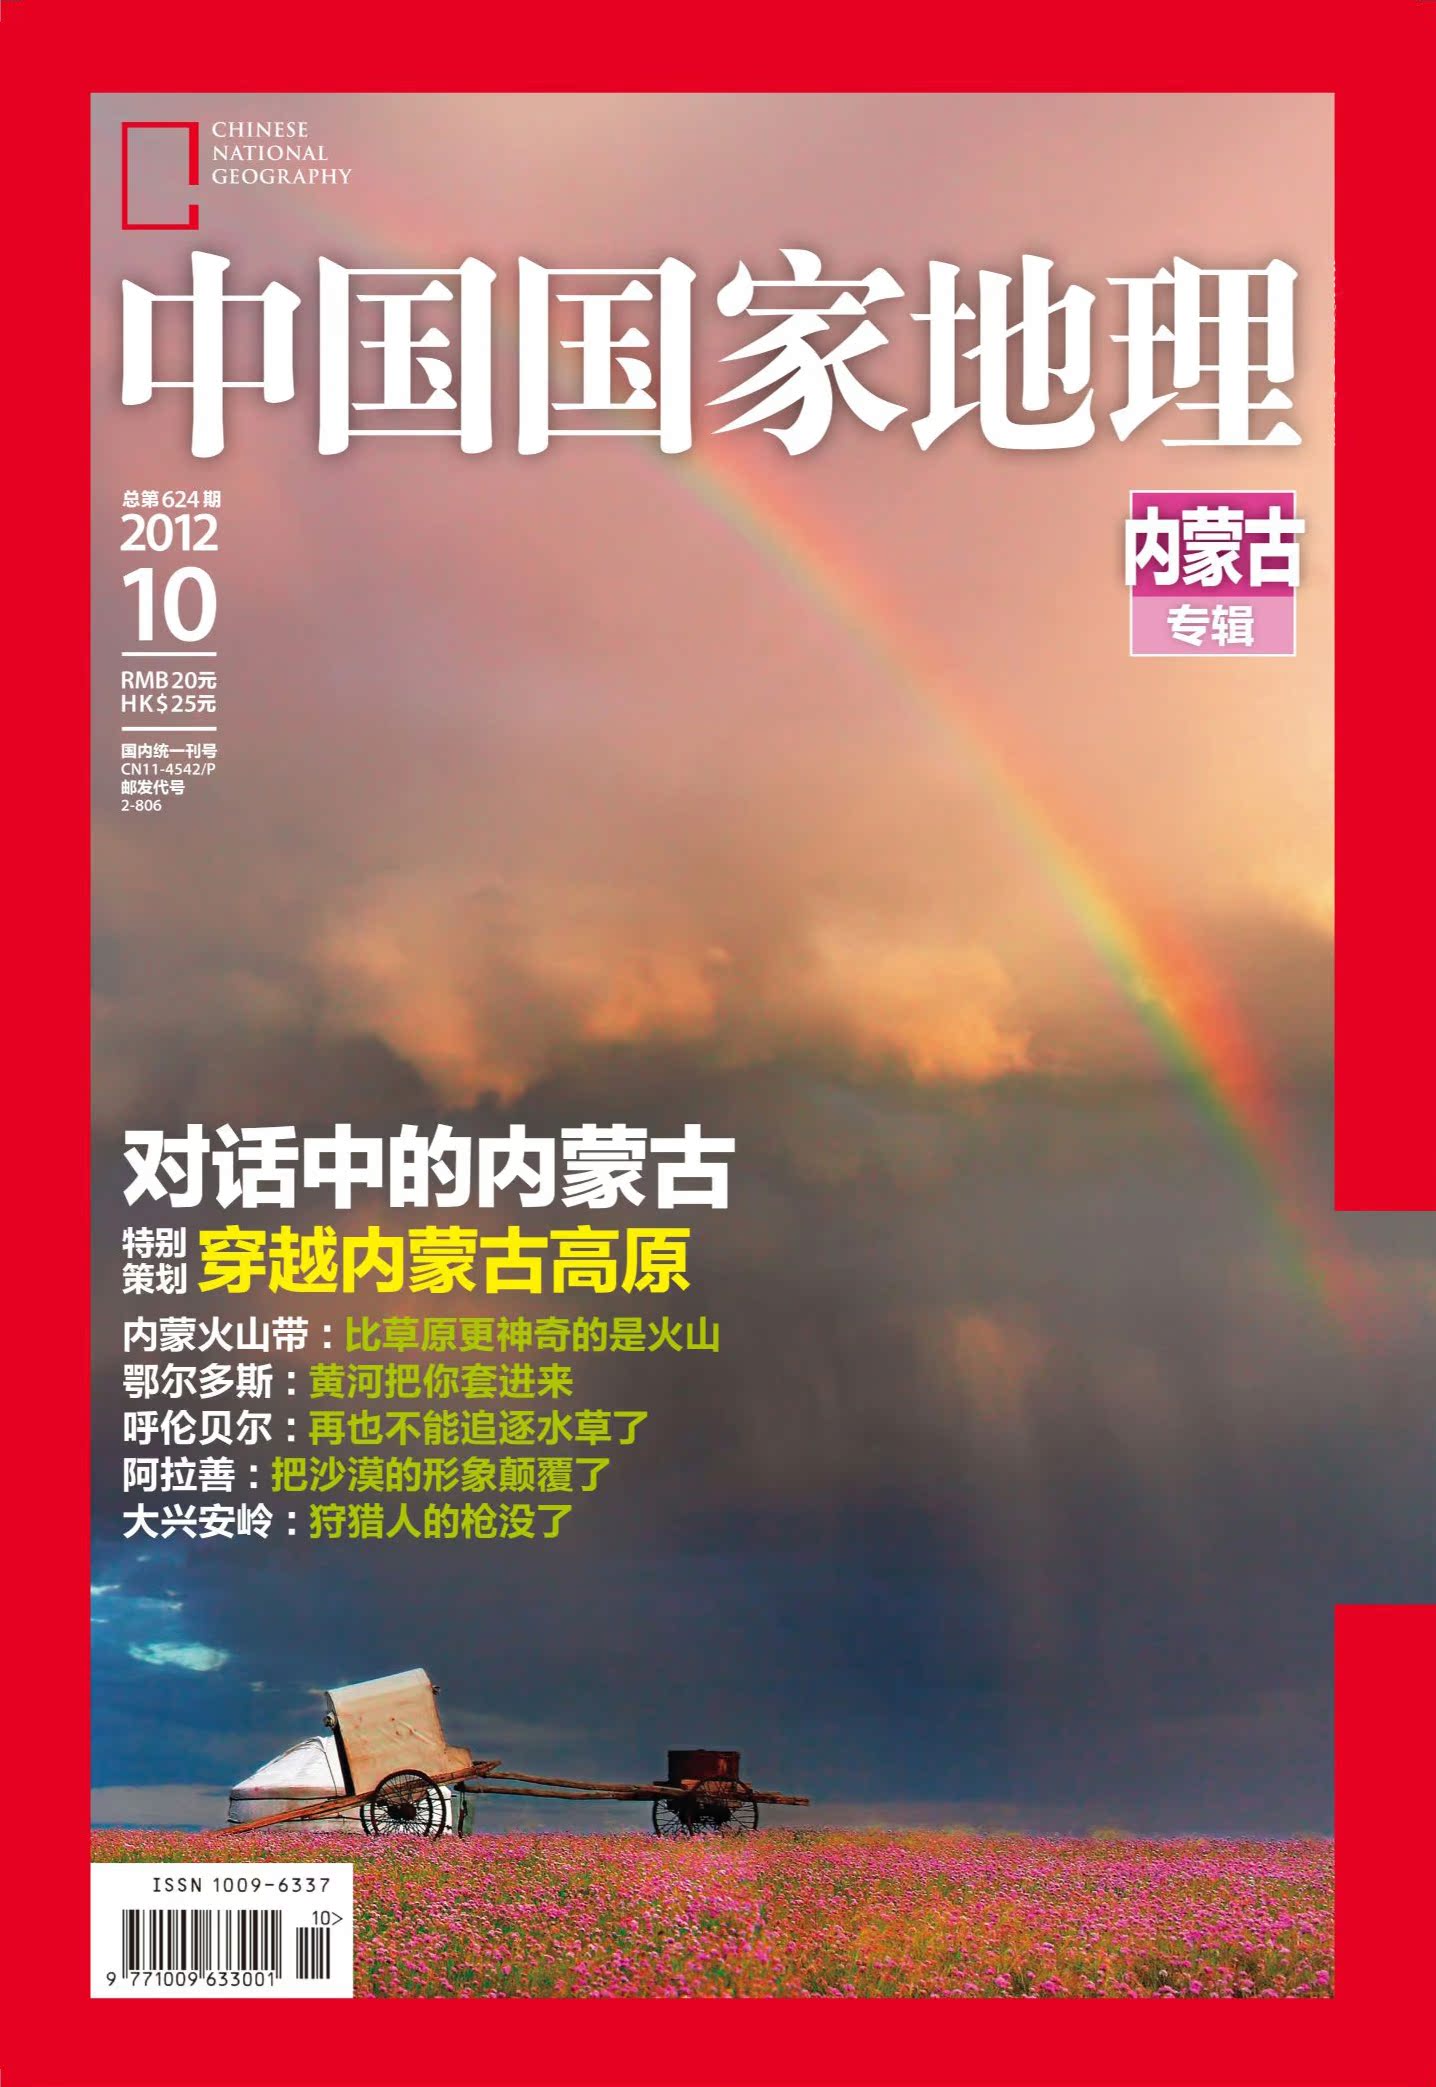 中国国家地理2013年11月刊杂志订阅,订购,中国